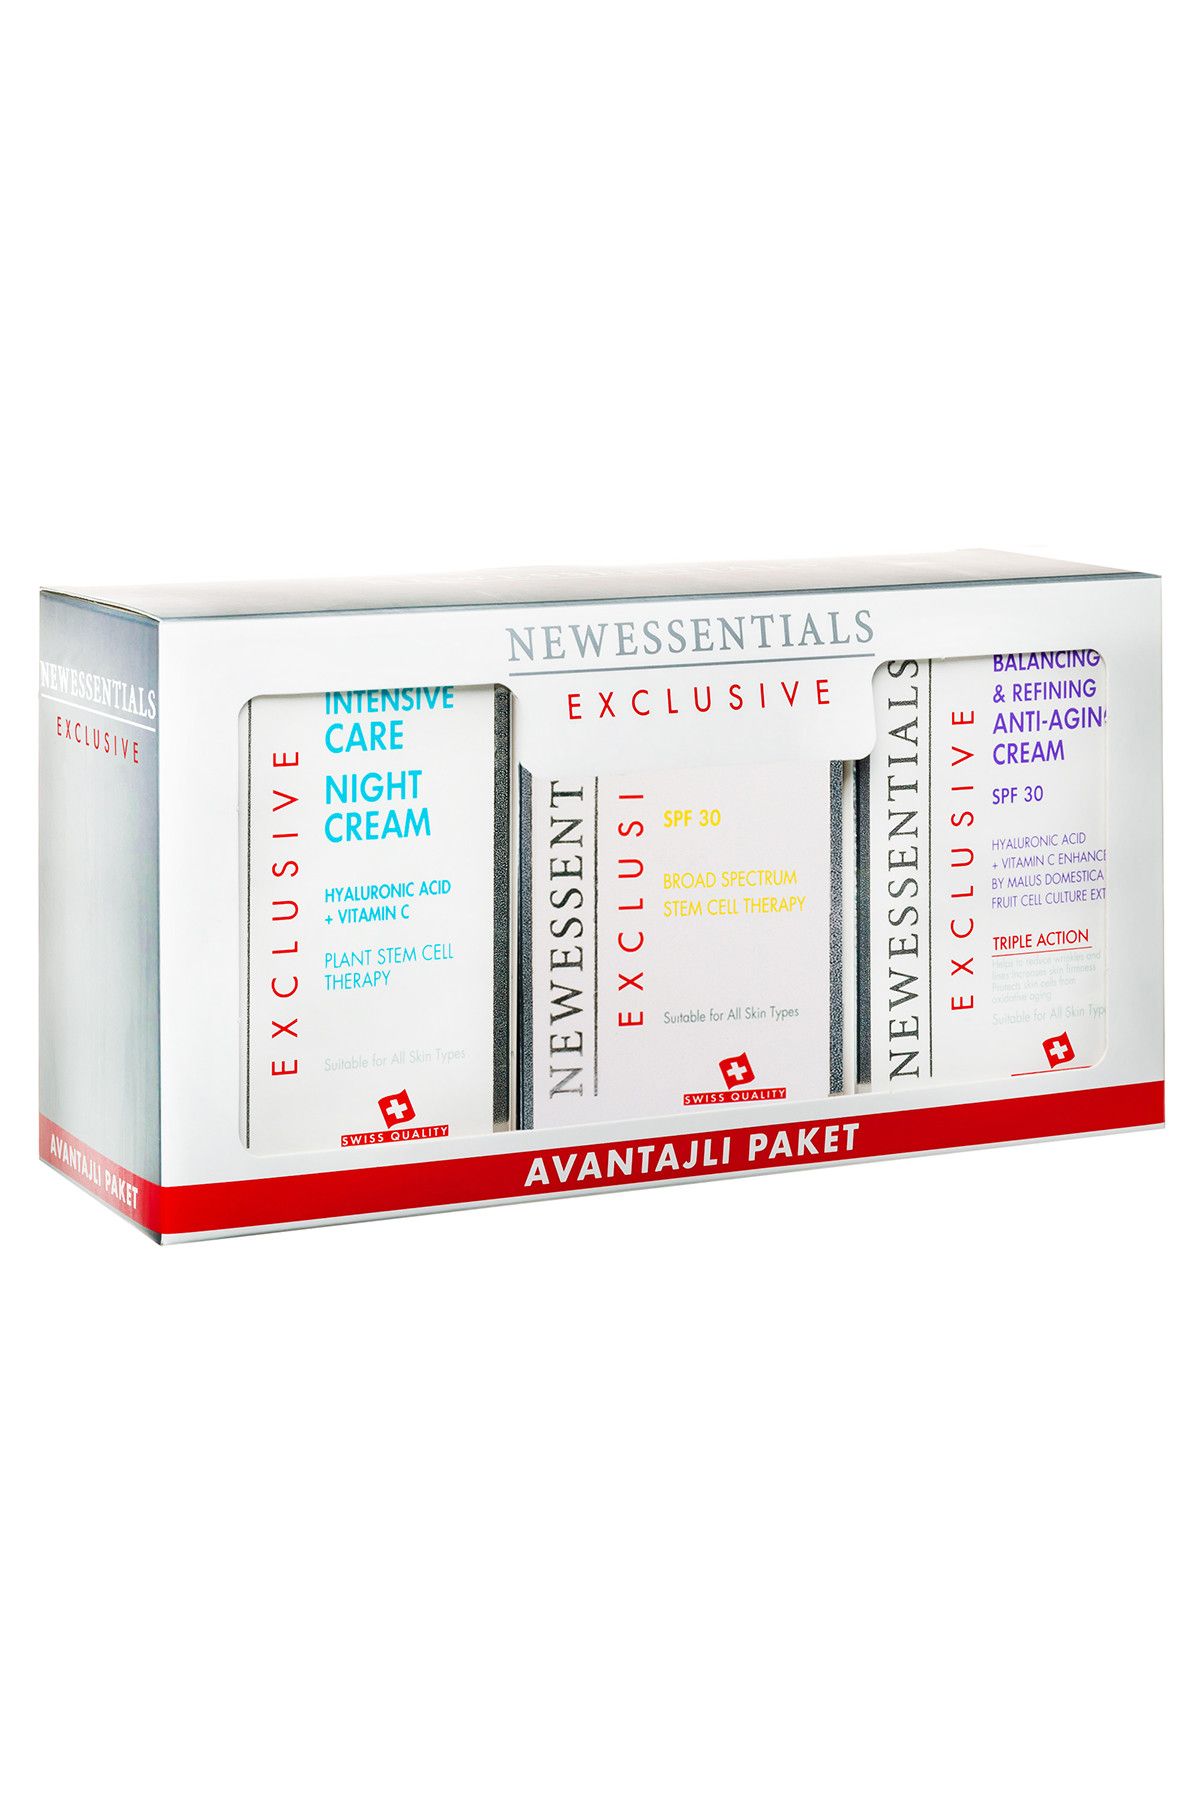 New Essentials Gece Gündüz Yoğun Bakım-Anti Aging 3'lü Avantaj Paket kozmopkt23